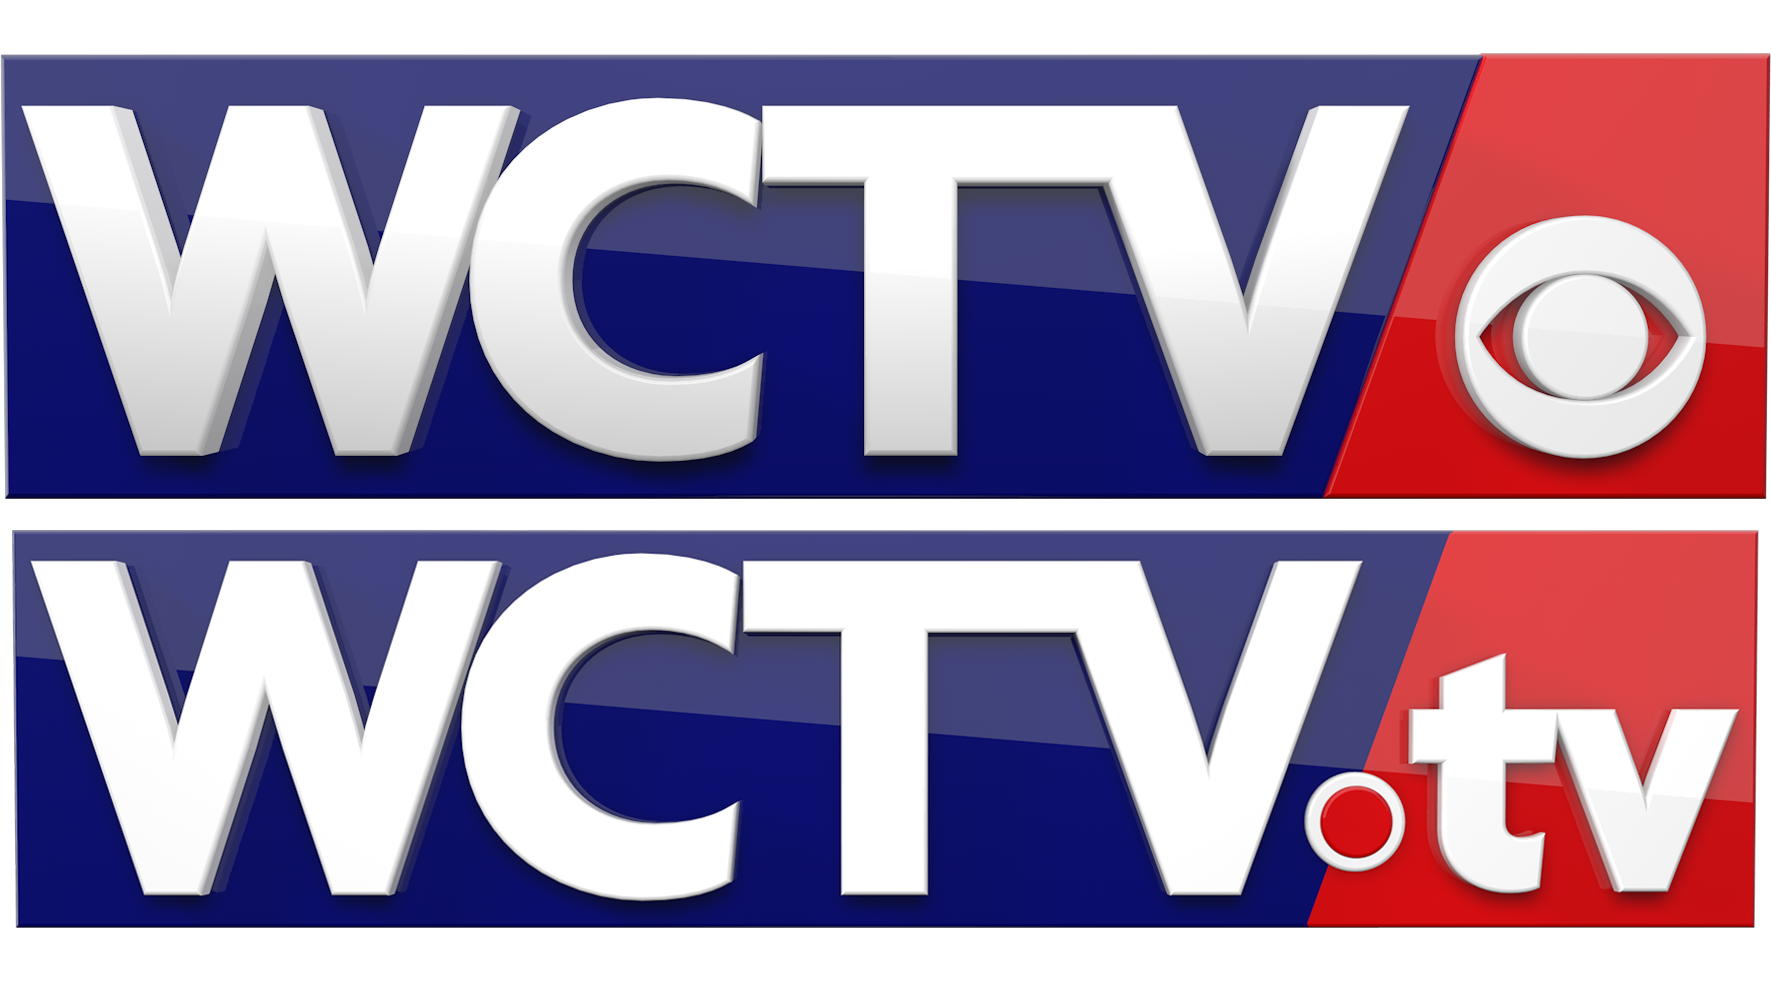 WCTV tv logo